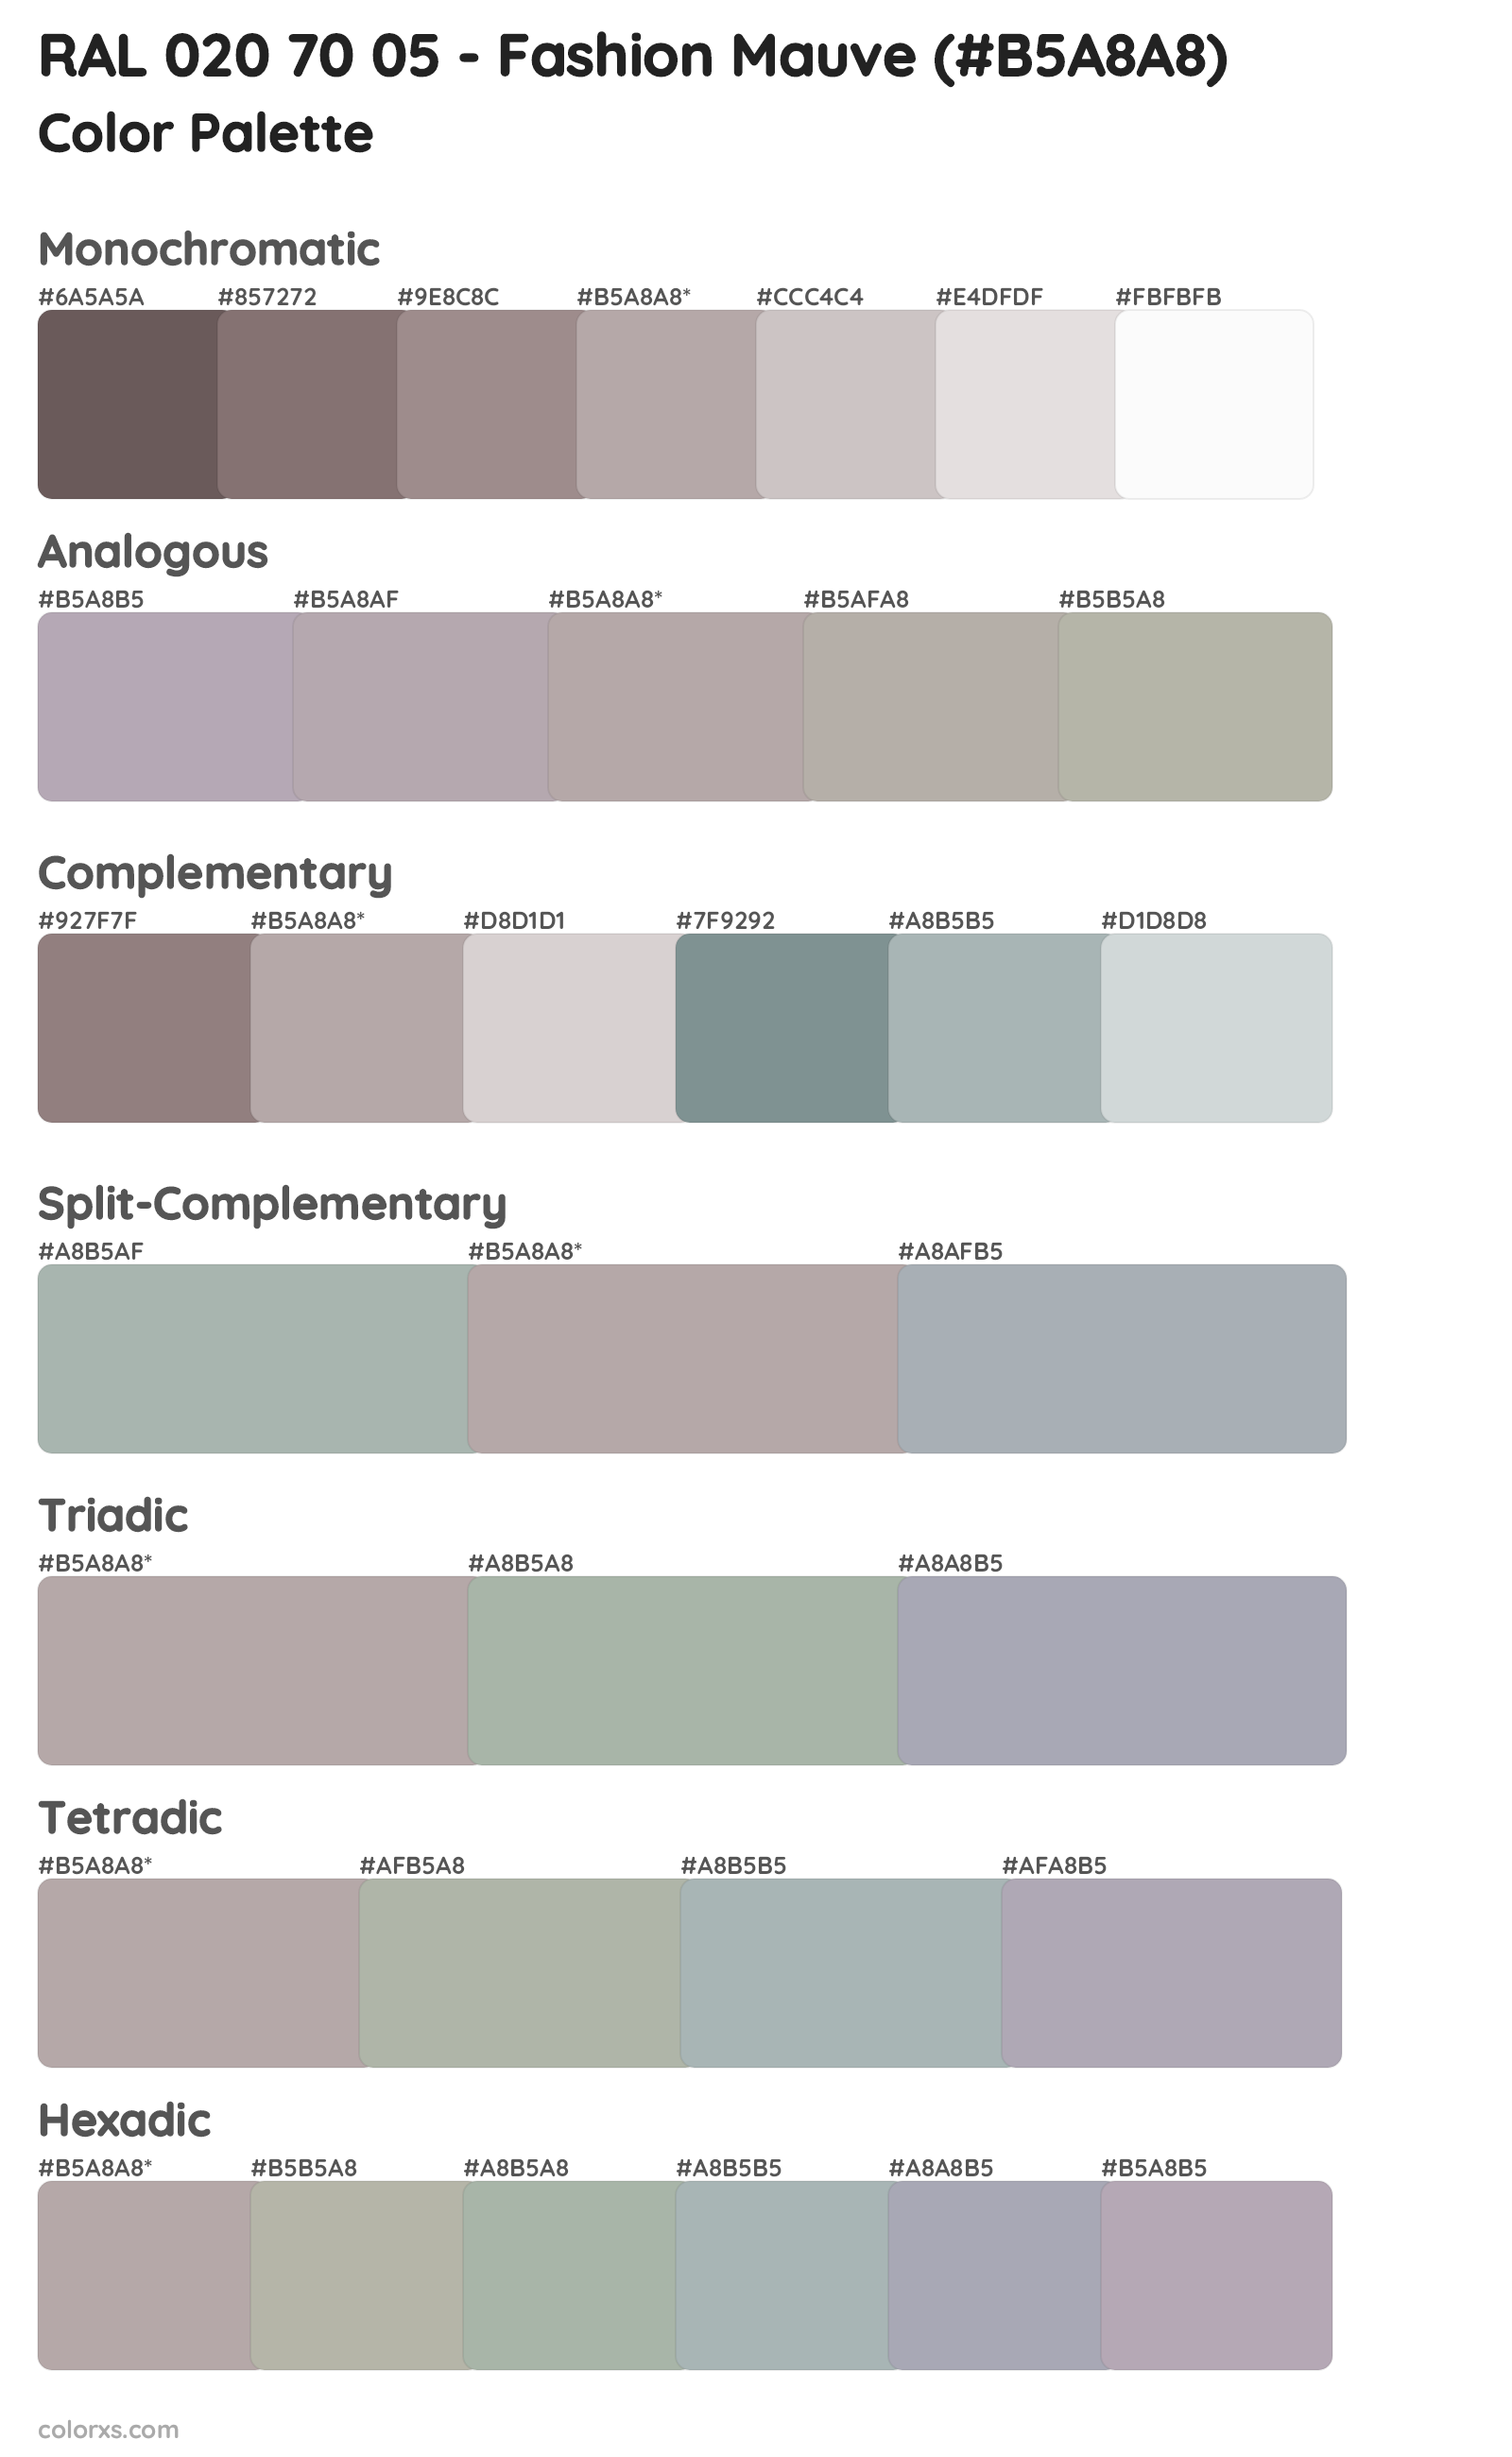 RAL 020 70 05 - Fashion Mauve Color Scheme Palettes